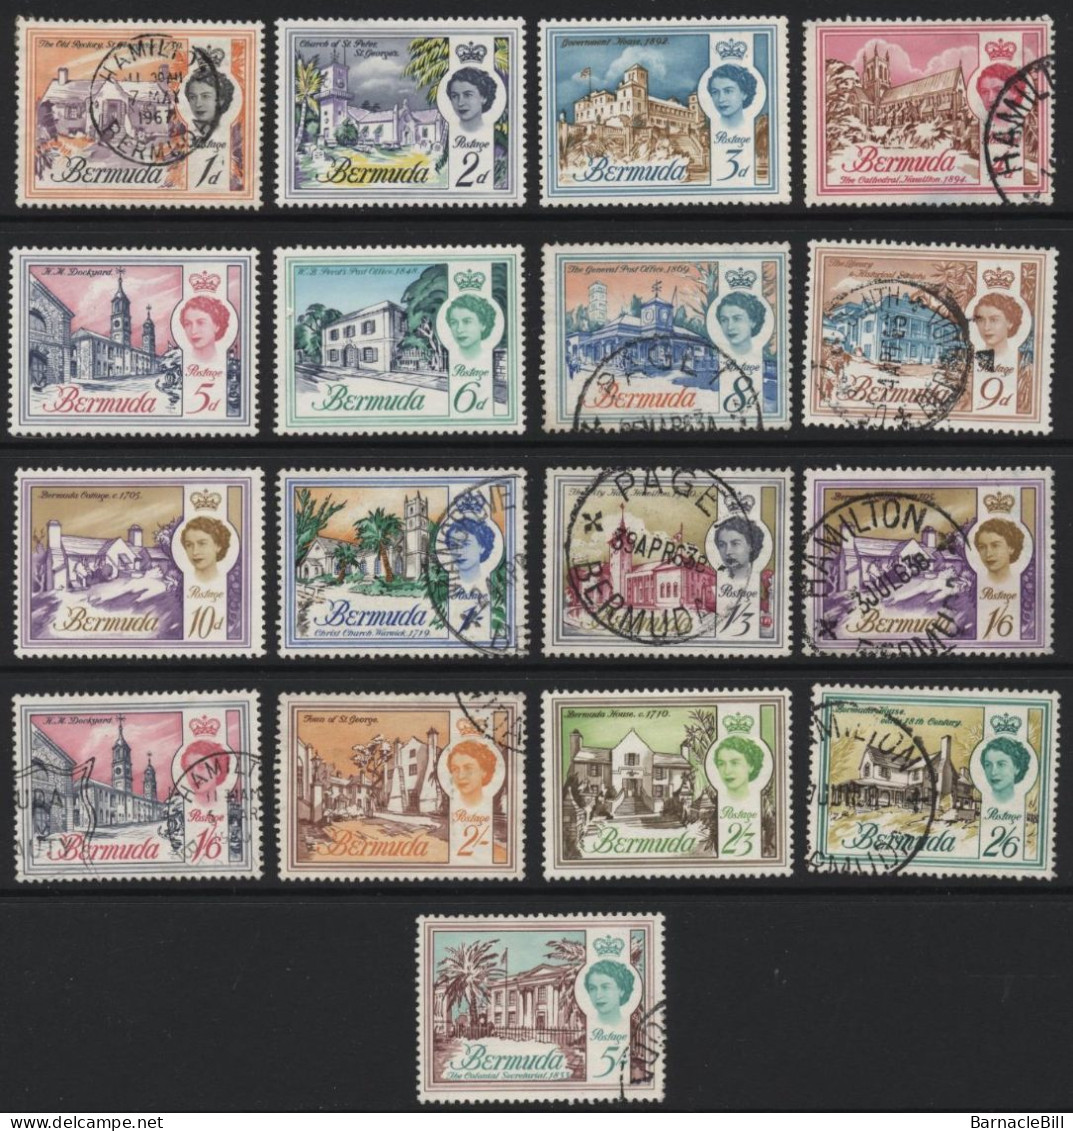 Bermuda (A47) 1962 Elizabeth II Pictorials. Values To 5 Shillings. Used & Unused. Hinged. - Bermuda